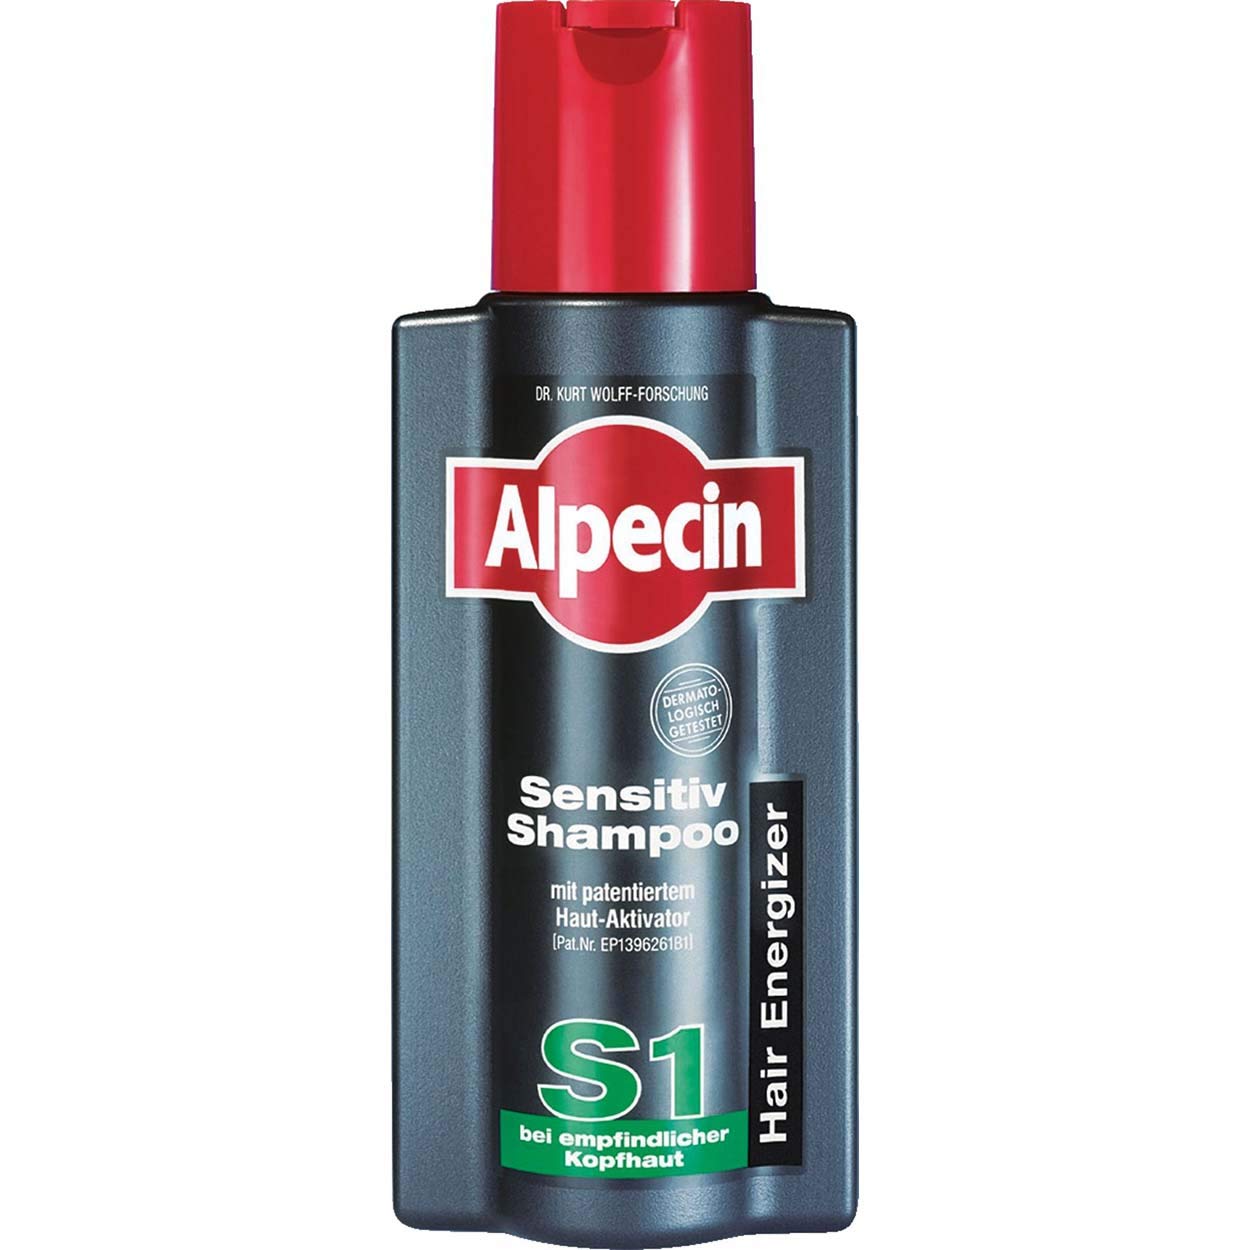 Alpecin Sensitiv Shampoo S1 - Für Empfindliche Kopfhaut 3 x 250ml